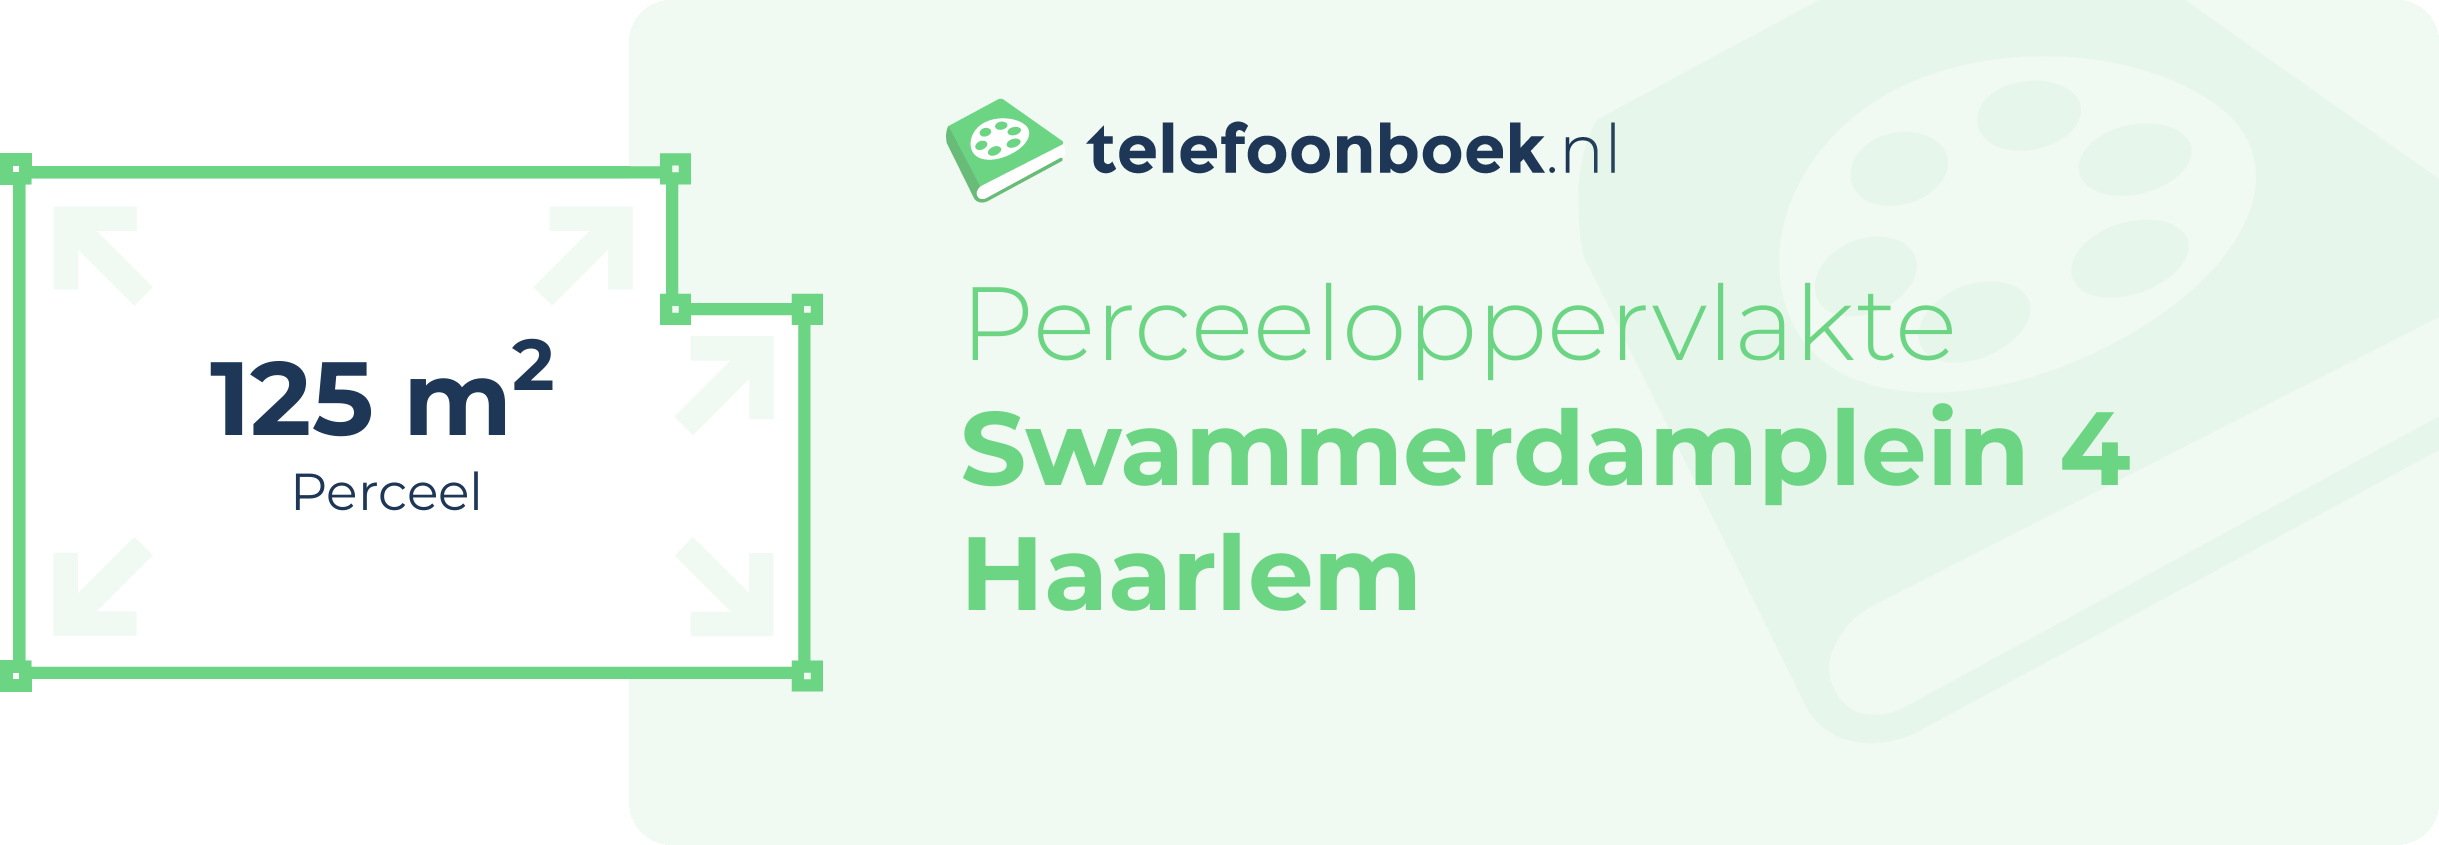 Perceeloppervlakte Swammerdamplein 4 Haarlem